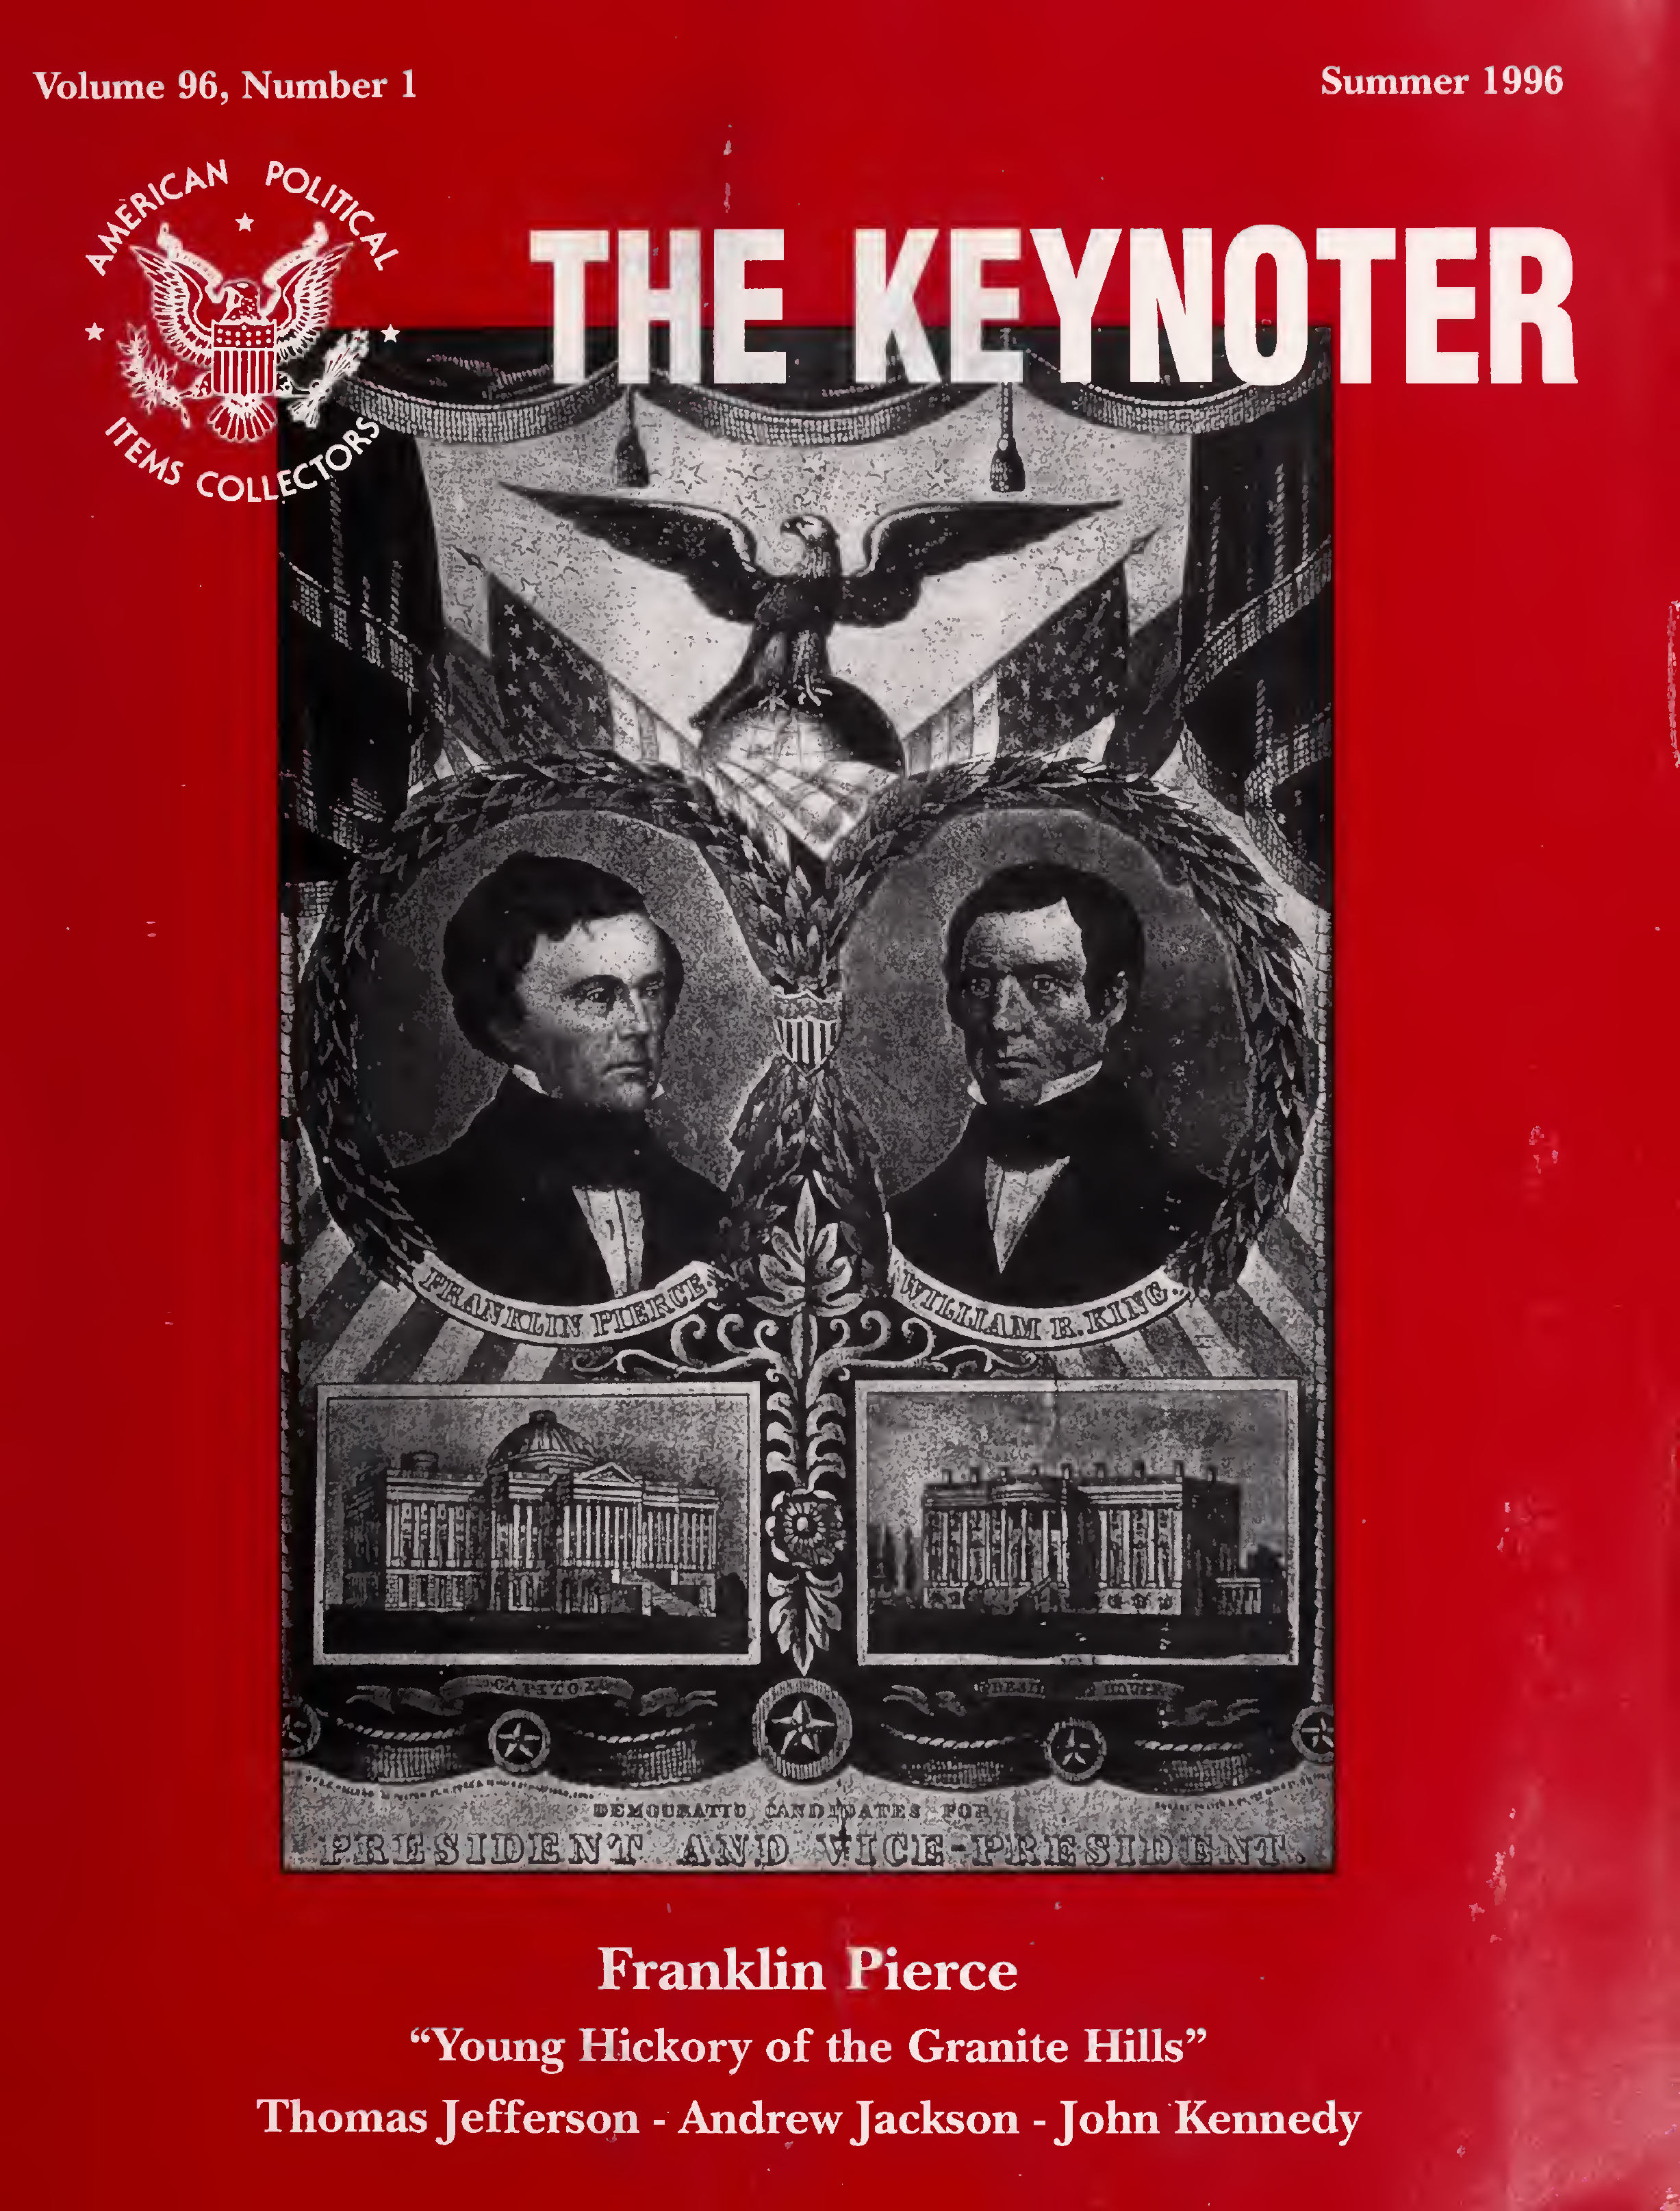 Keynoter 1996 - Summer - Issue 1